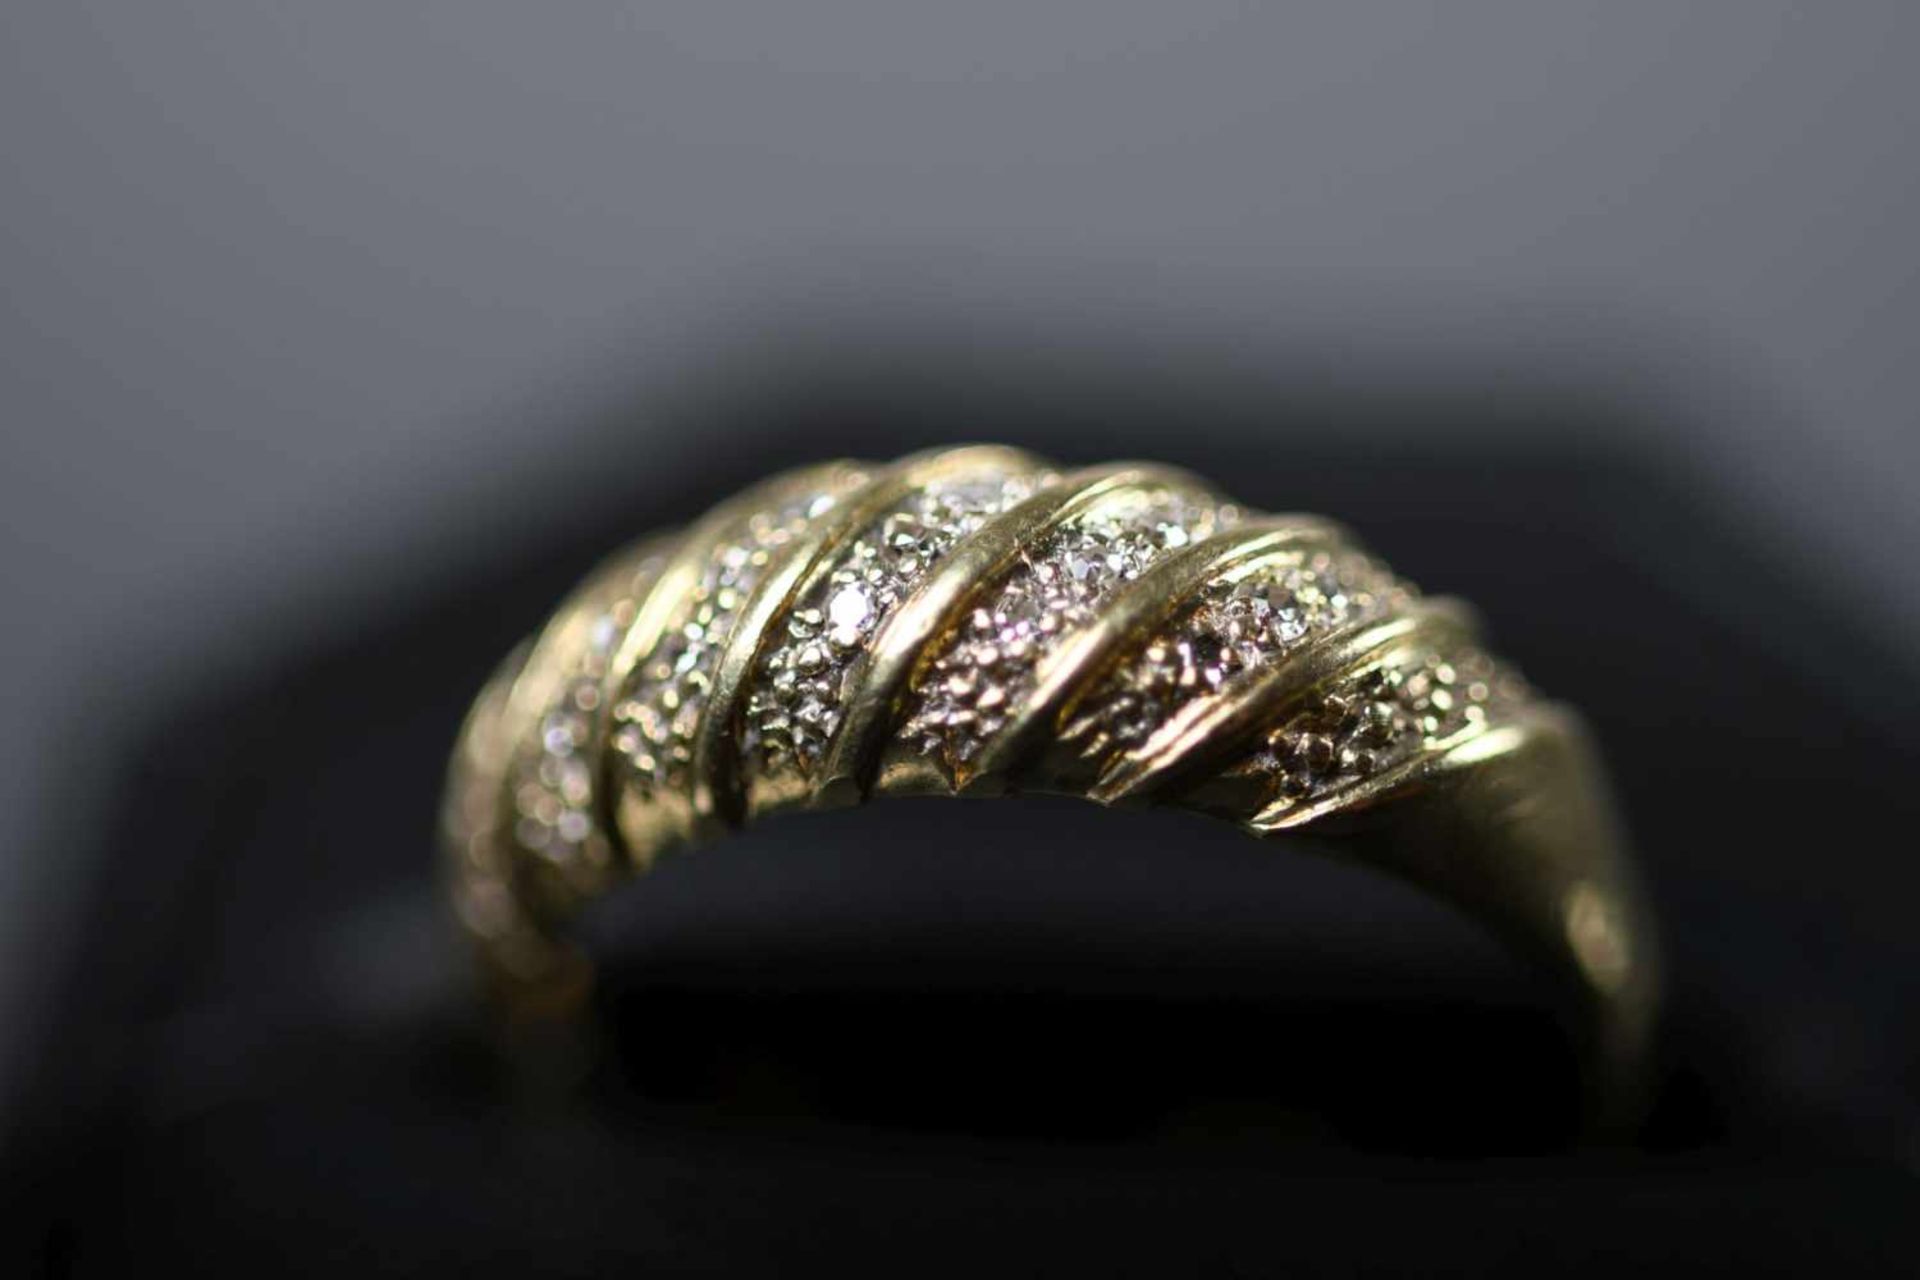 Damenring, GG 585ausgefasst mit 15 Diamanten im 8/8-Schliff, ca. 0,15 ct, Ringgröße: 59, ca. 4,5 gr.